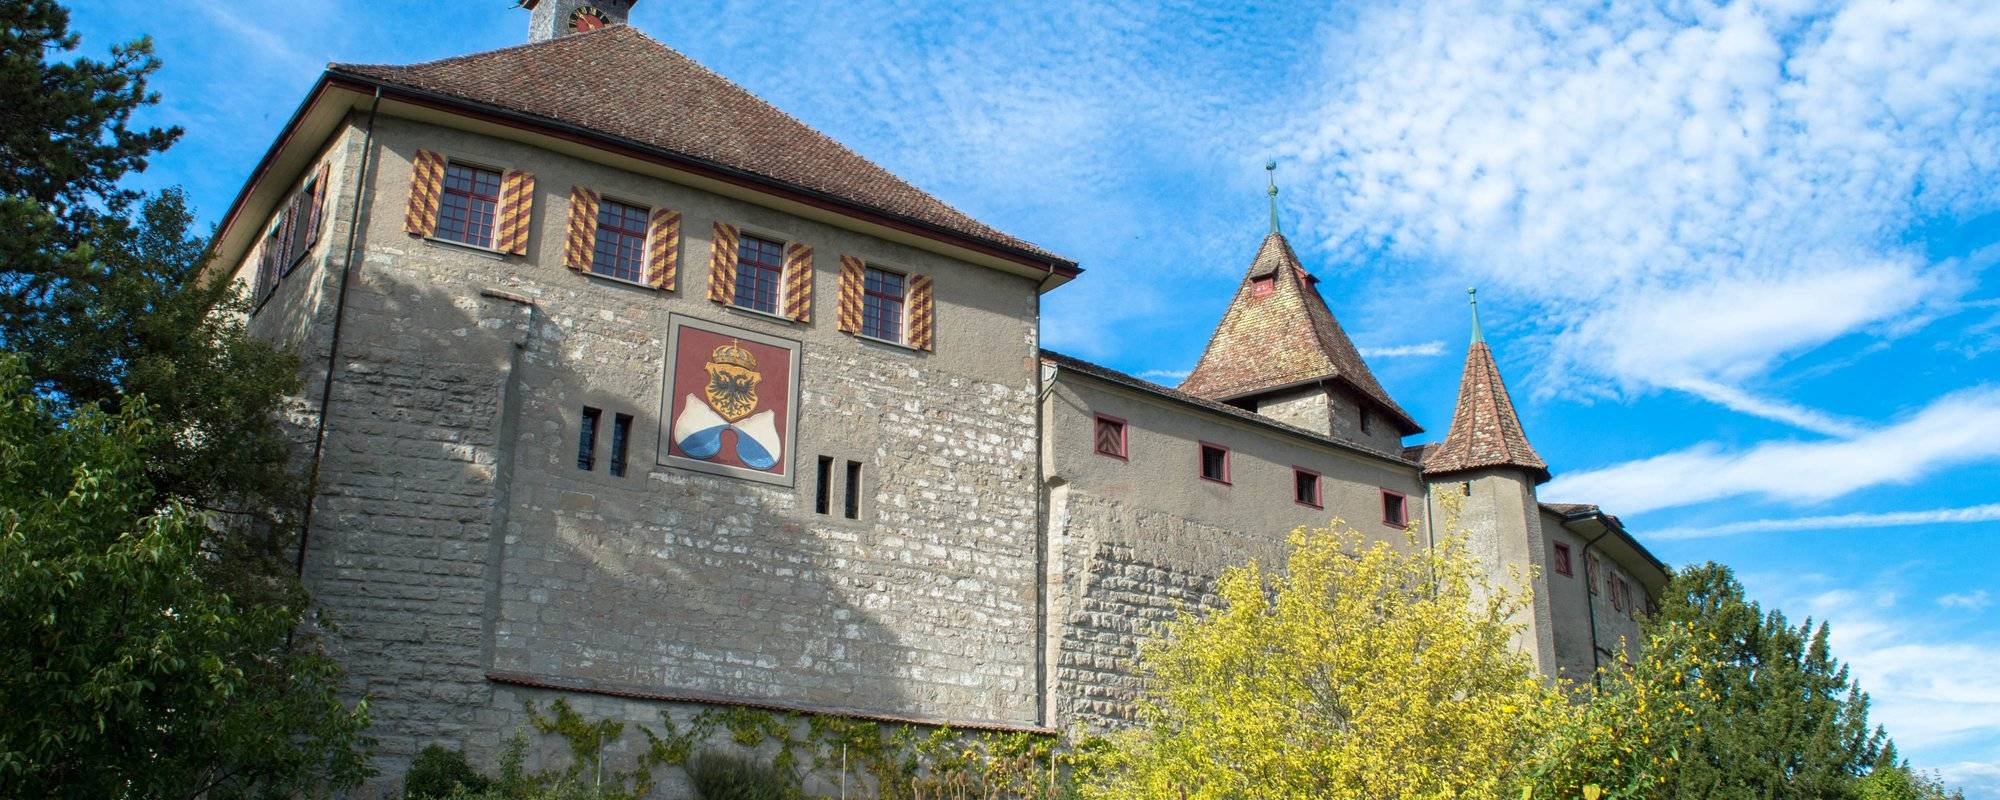 Switzerland travel series - part 6 - Castle Kyburg